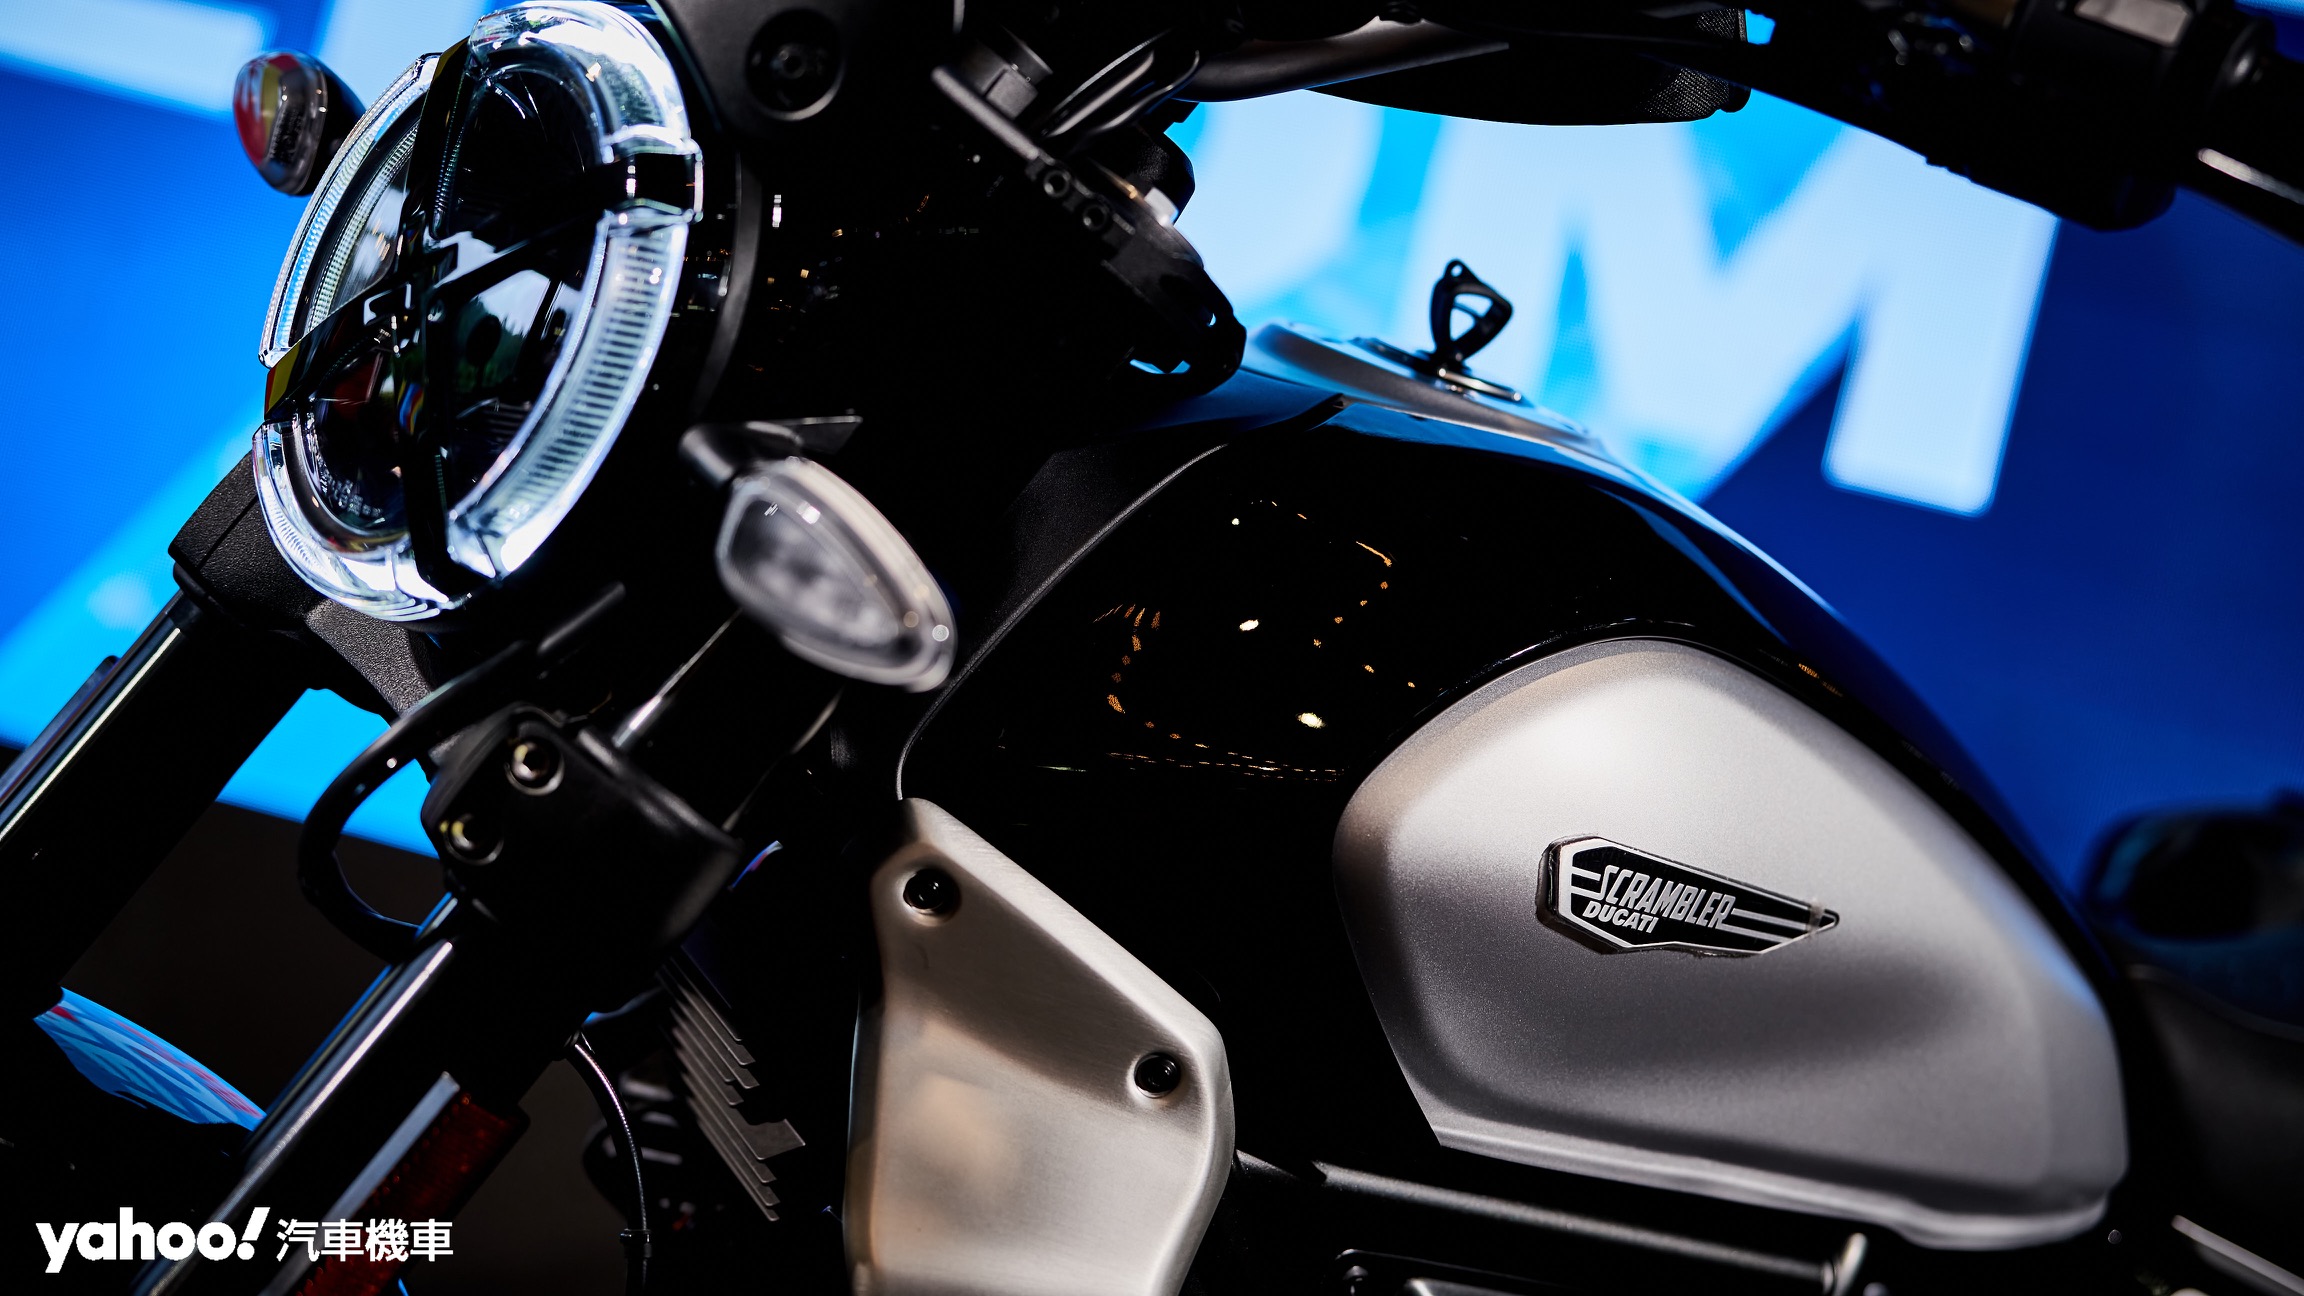 鋼製油箱與全新飾蓋造型改變了Scrambler Ducati的風格走向但不失經典元素。